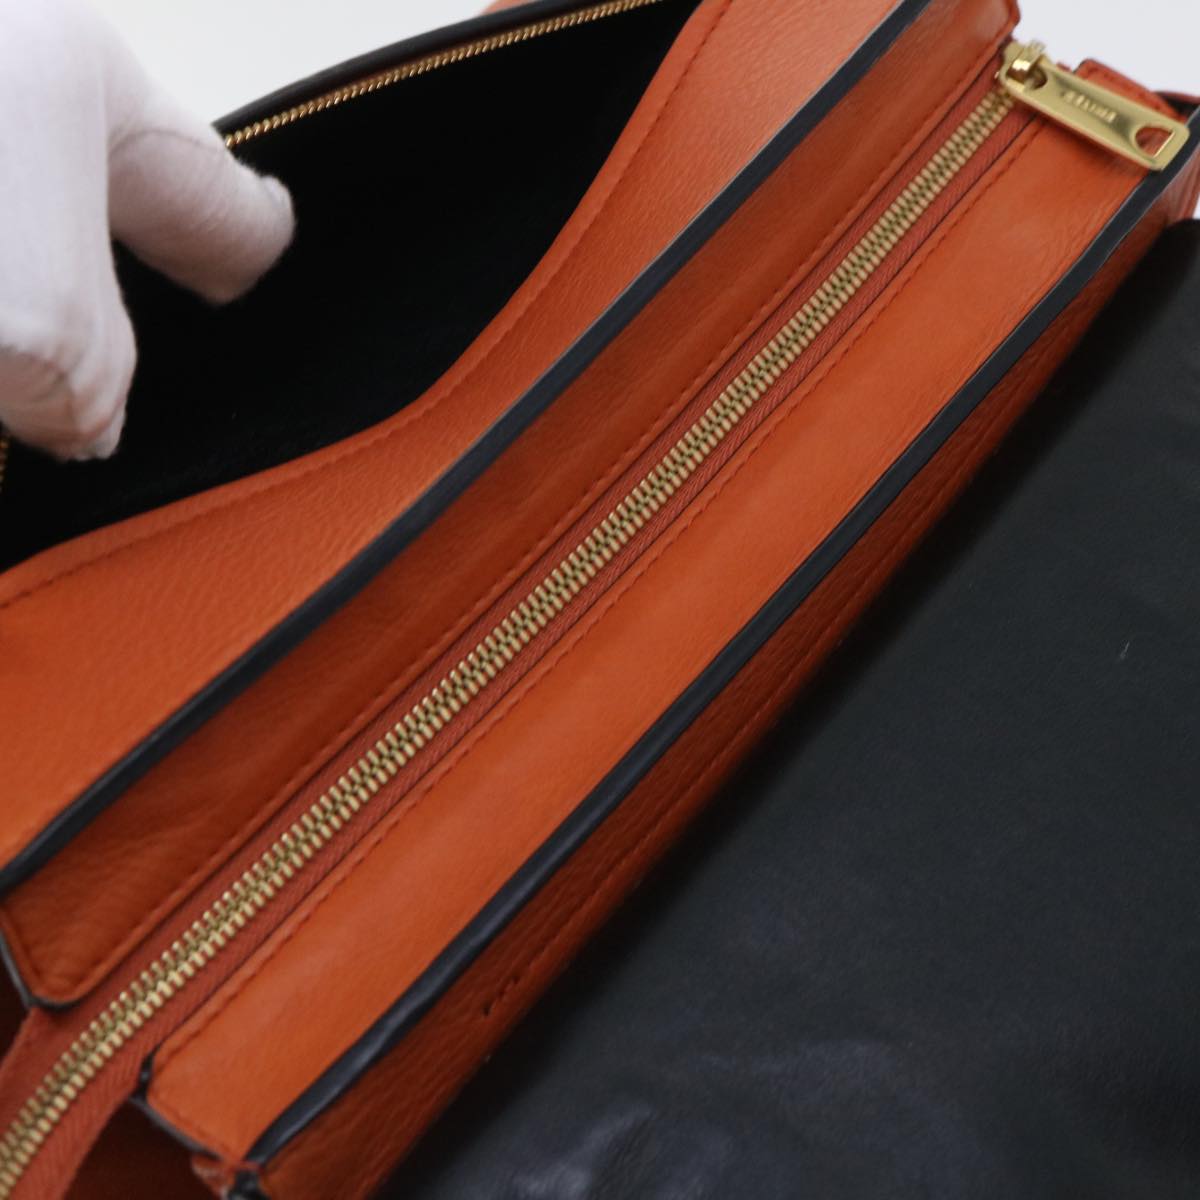 CELINE Shoulder Bag Leather 2way Orange Auth bs7869